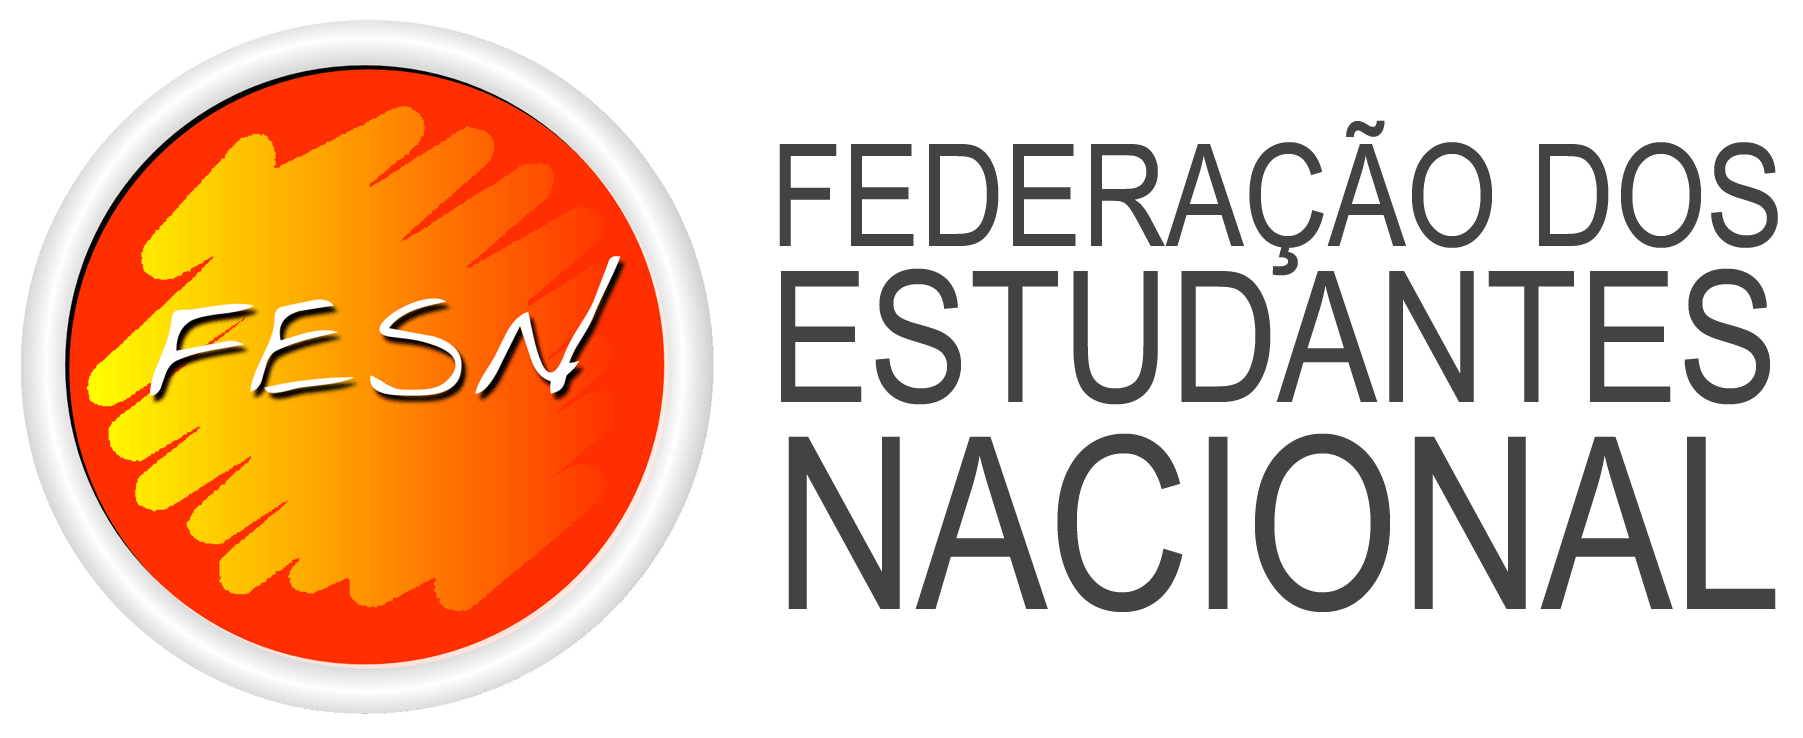 FESN – Federação dos Estudantes Nacional